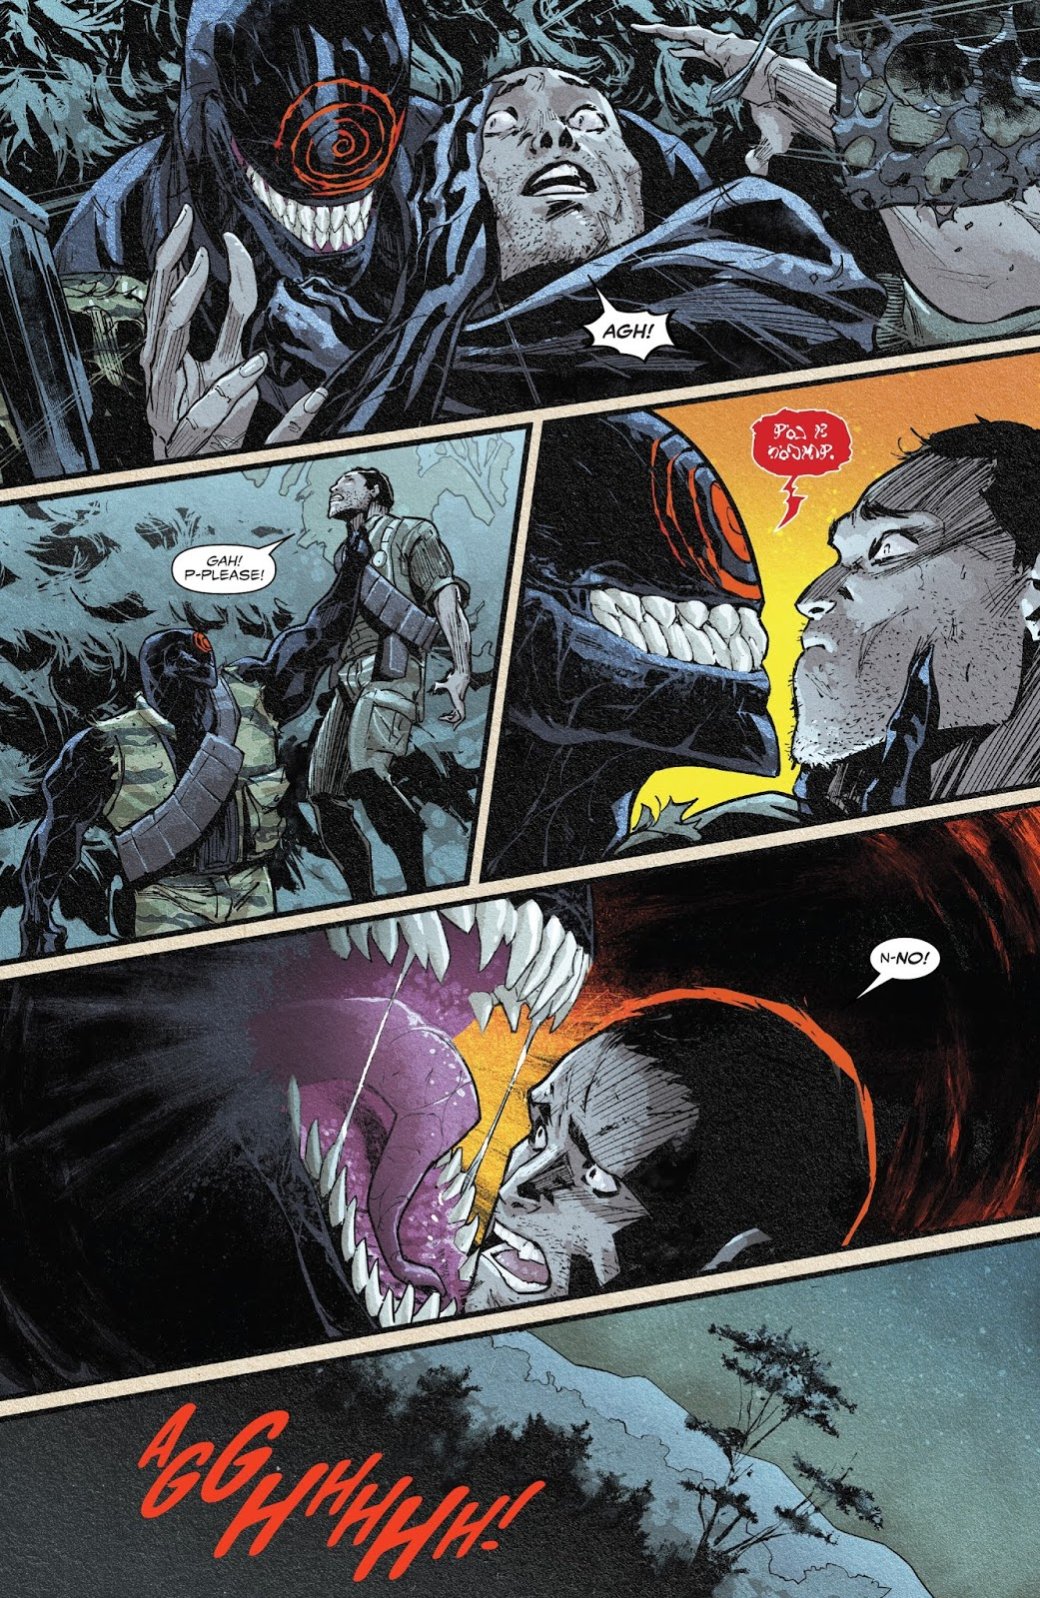 Галерея Как Marvel меняет историю Венома: первый носитель, бог симбиотов и другие неизвестные ранее секреты - 3 фото